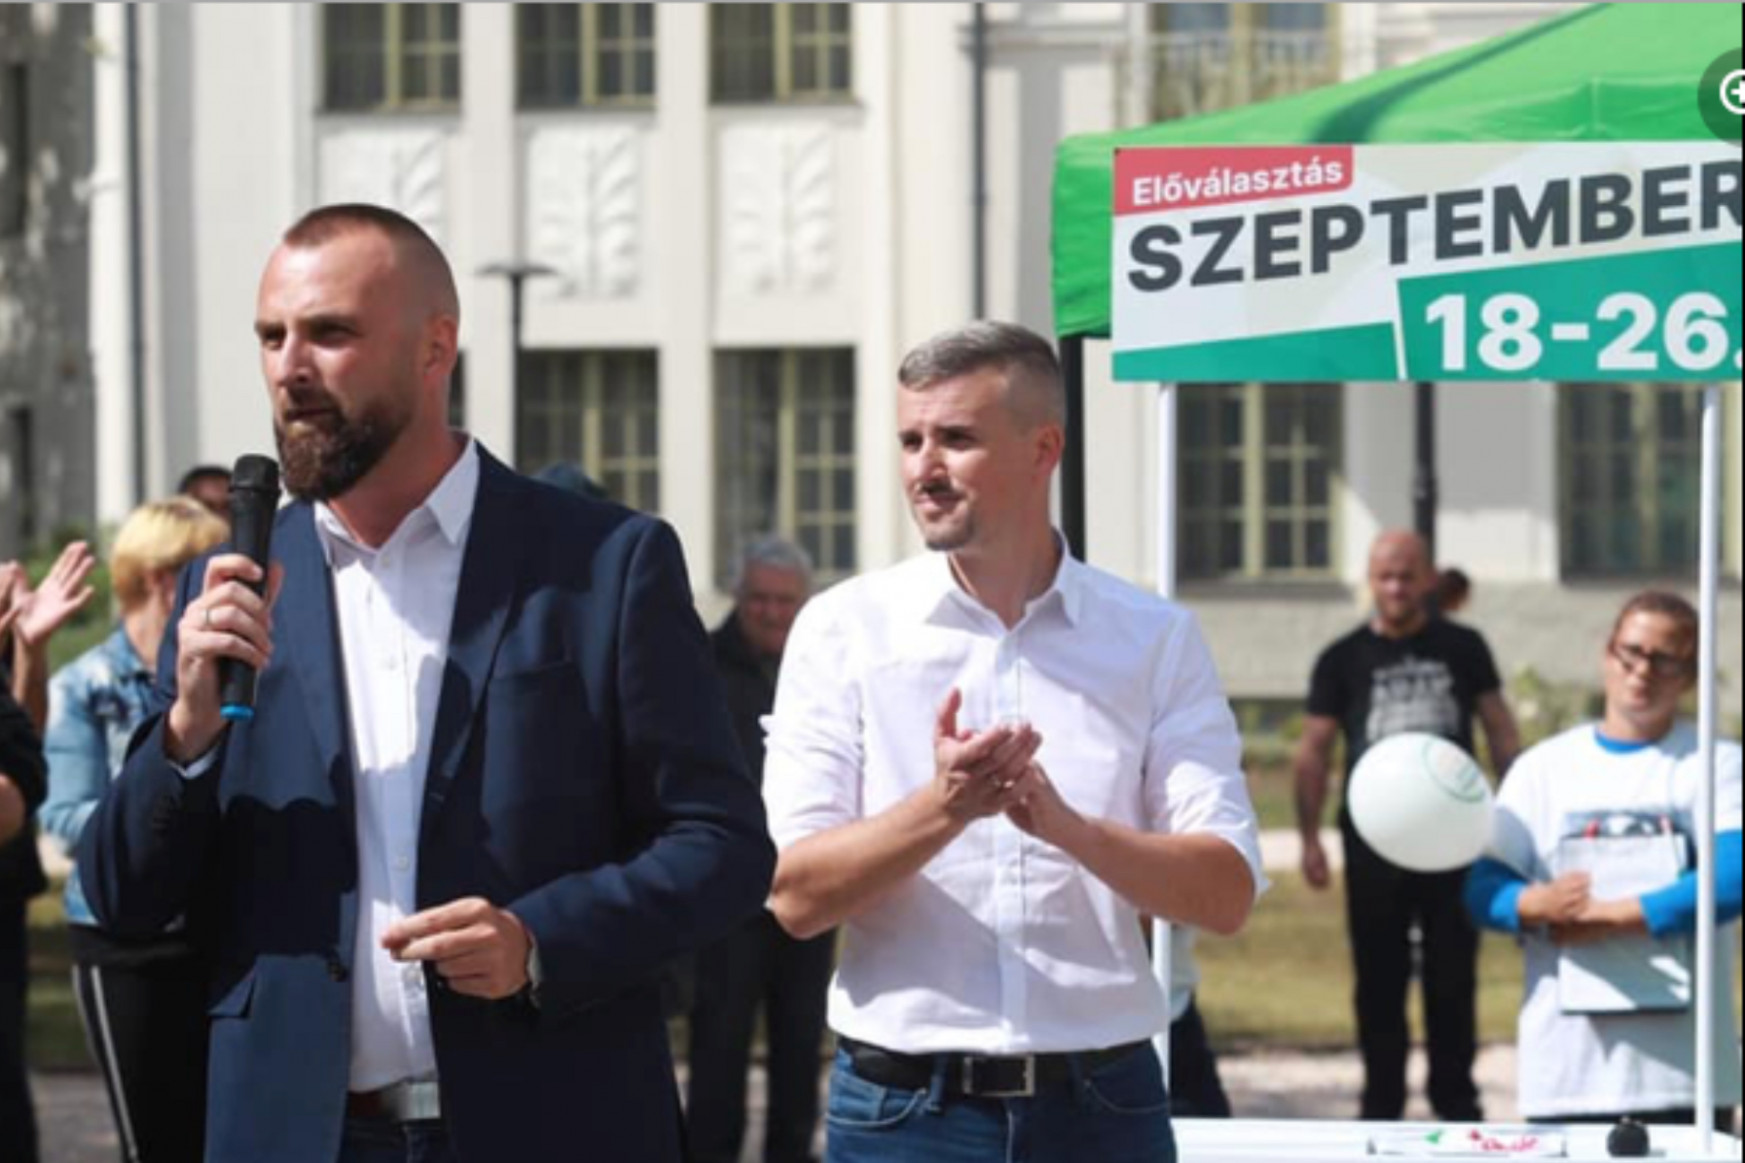 Fideszes kollaborációtól a cigánygyűlölő bűnözőzésig: elmérgesedett az ellenzéki előválasztás Szabolcsban